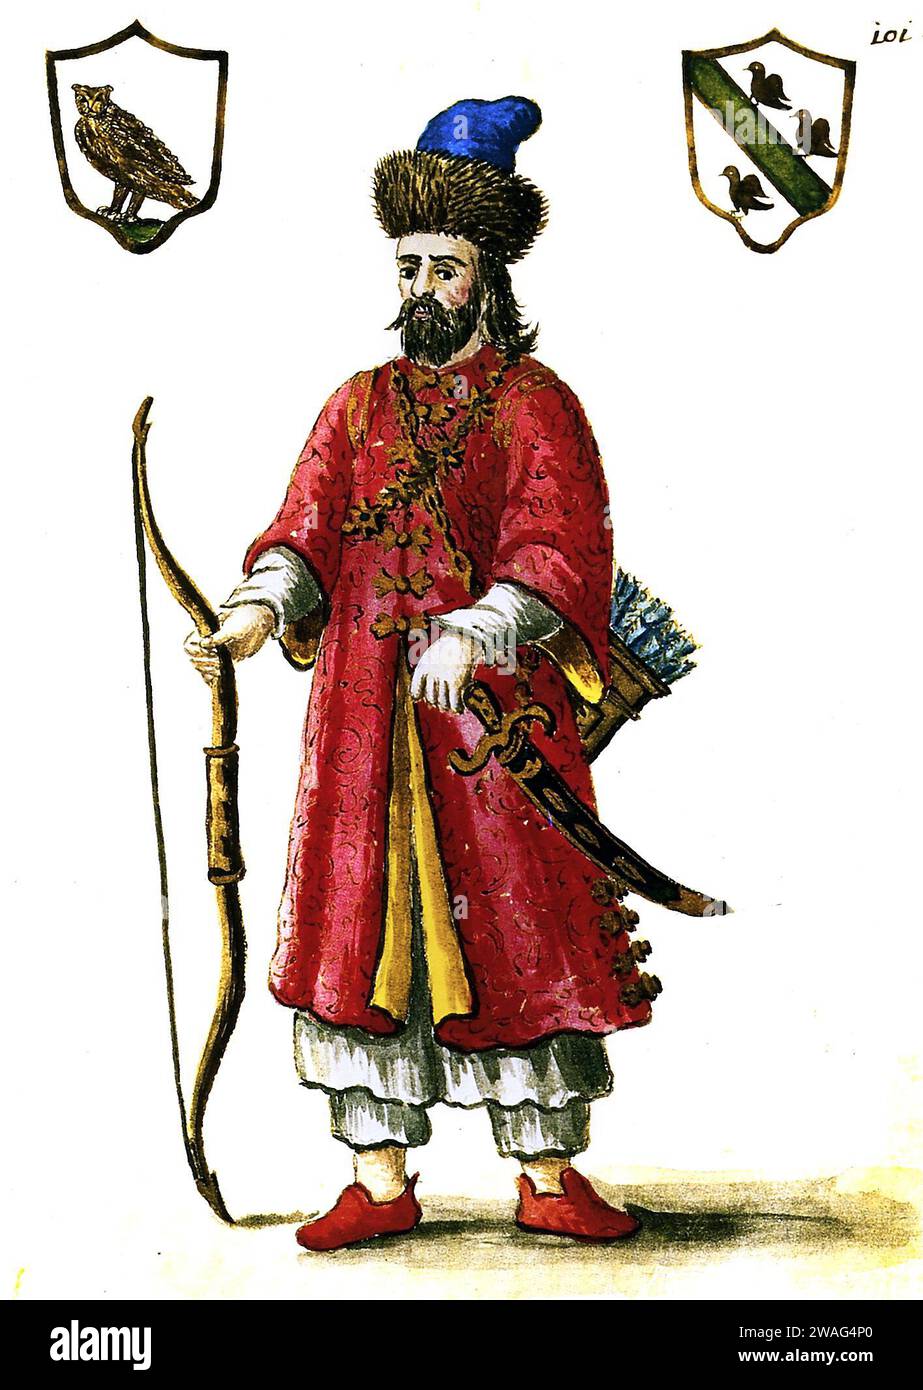 Marco Polo. Porträt des venezianischen Kaufmanns und Entdeckers Marco Polo (ca. 1254-1324), Illustration des 18. Jahrhunderts in Tatarenuniform Stockfoto